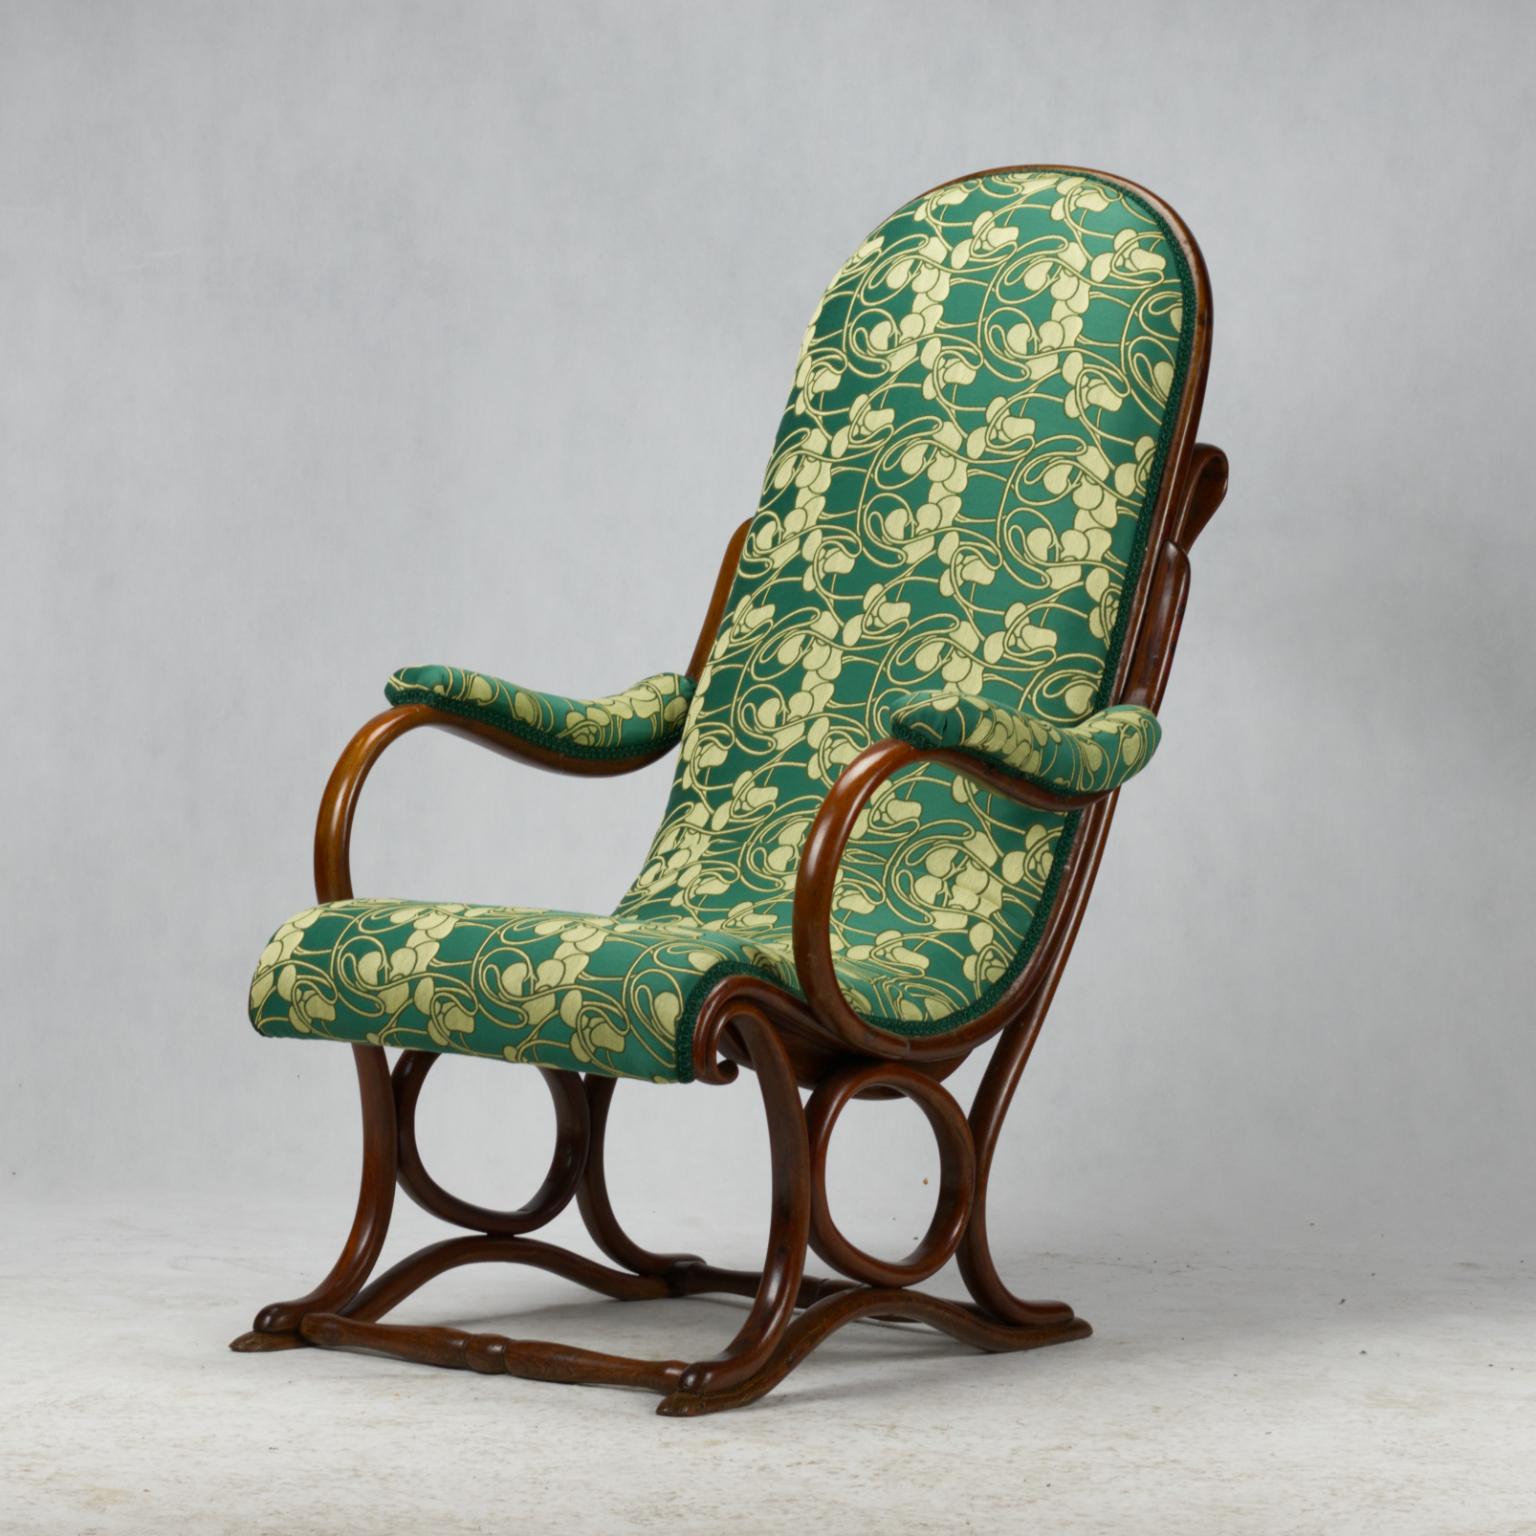 Sehr seltener antiker Thonet Sessel Nr. 1 der Firma Gebruder Thonet aus dem späten 19. Jahrhundert in sehr gutem Zustand. Neue Polstermöbel.

Das letzte Bild stammt aus dem Katalog der Firma Gebruder Thonet von 1886.
 